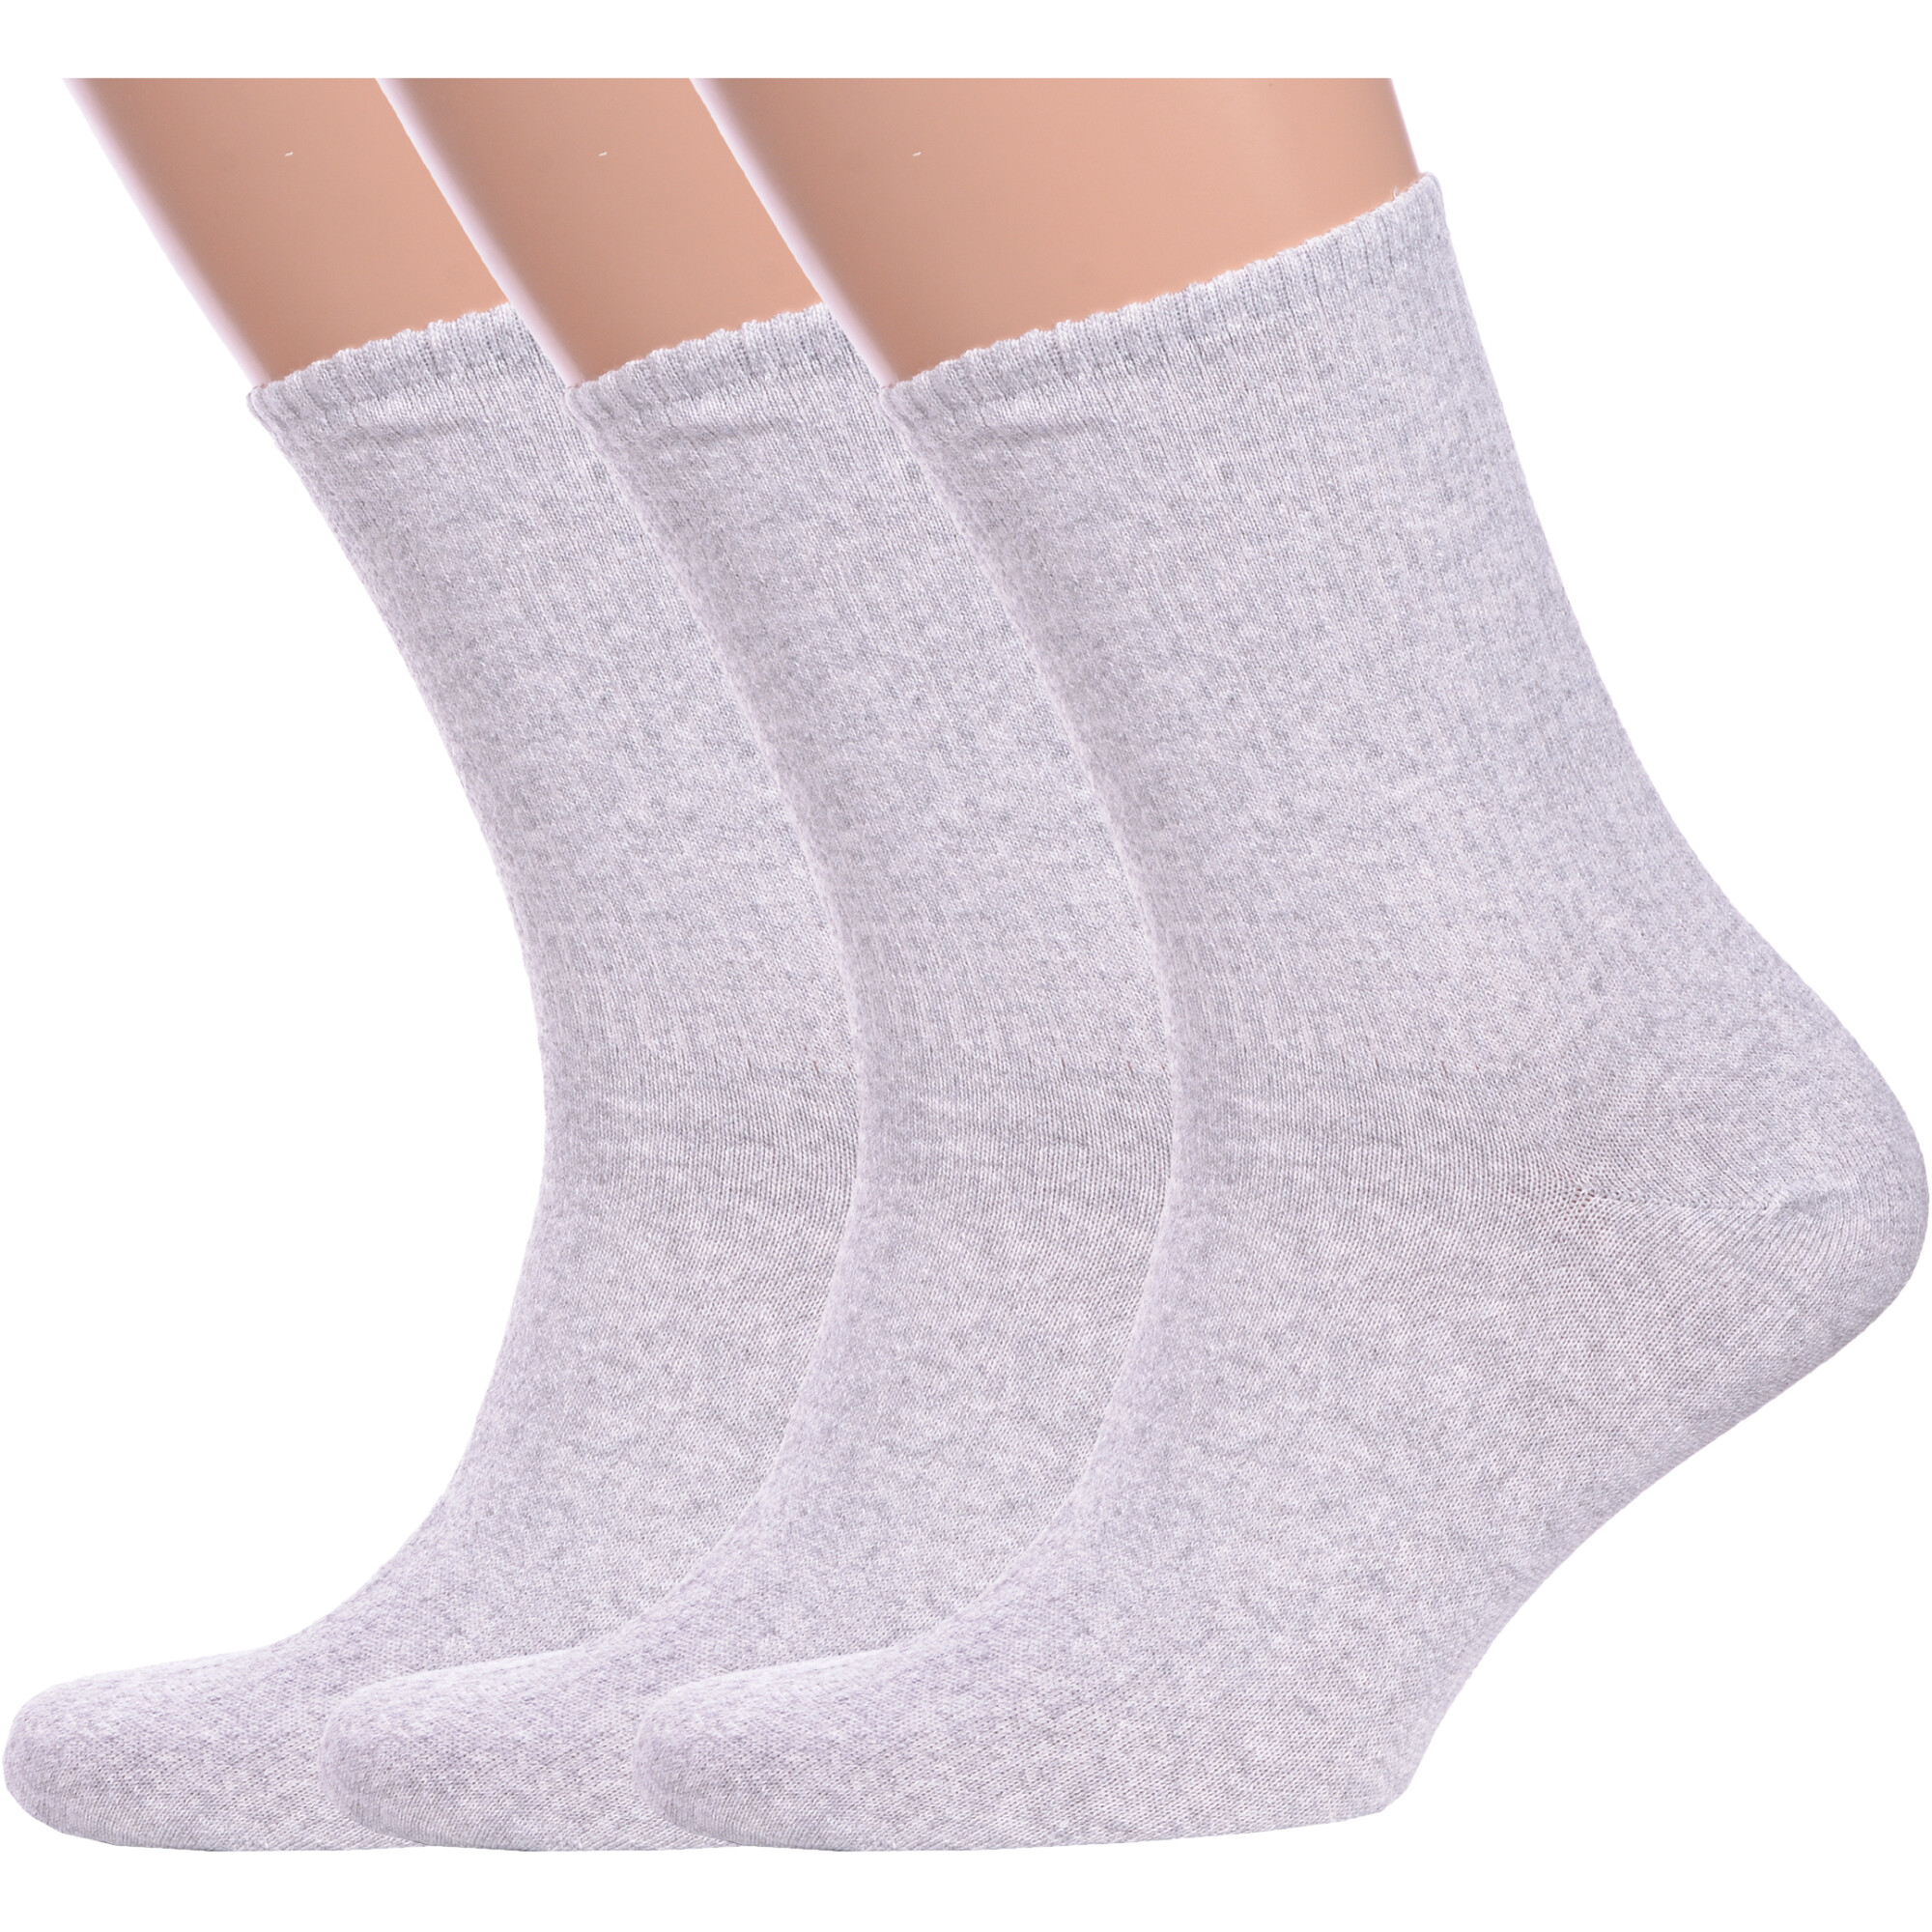 Комплект носков мужских Альтаир 3-М85 серых 29 3 пары